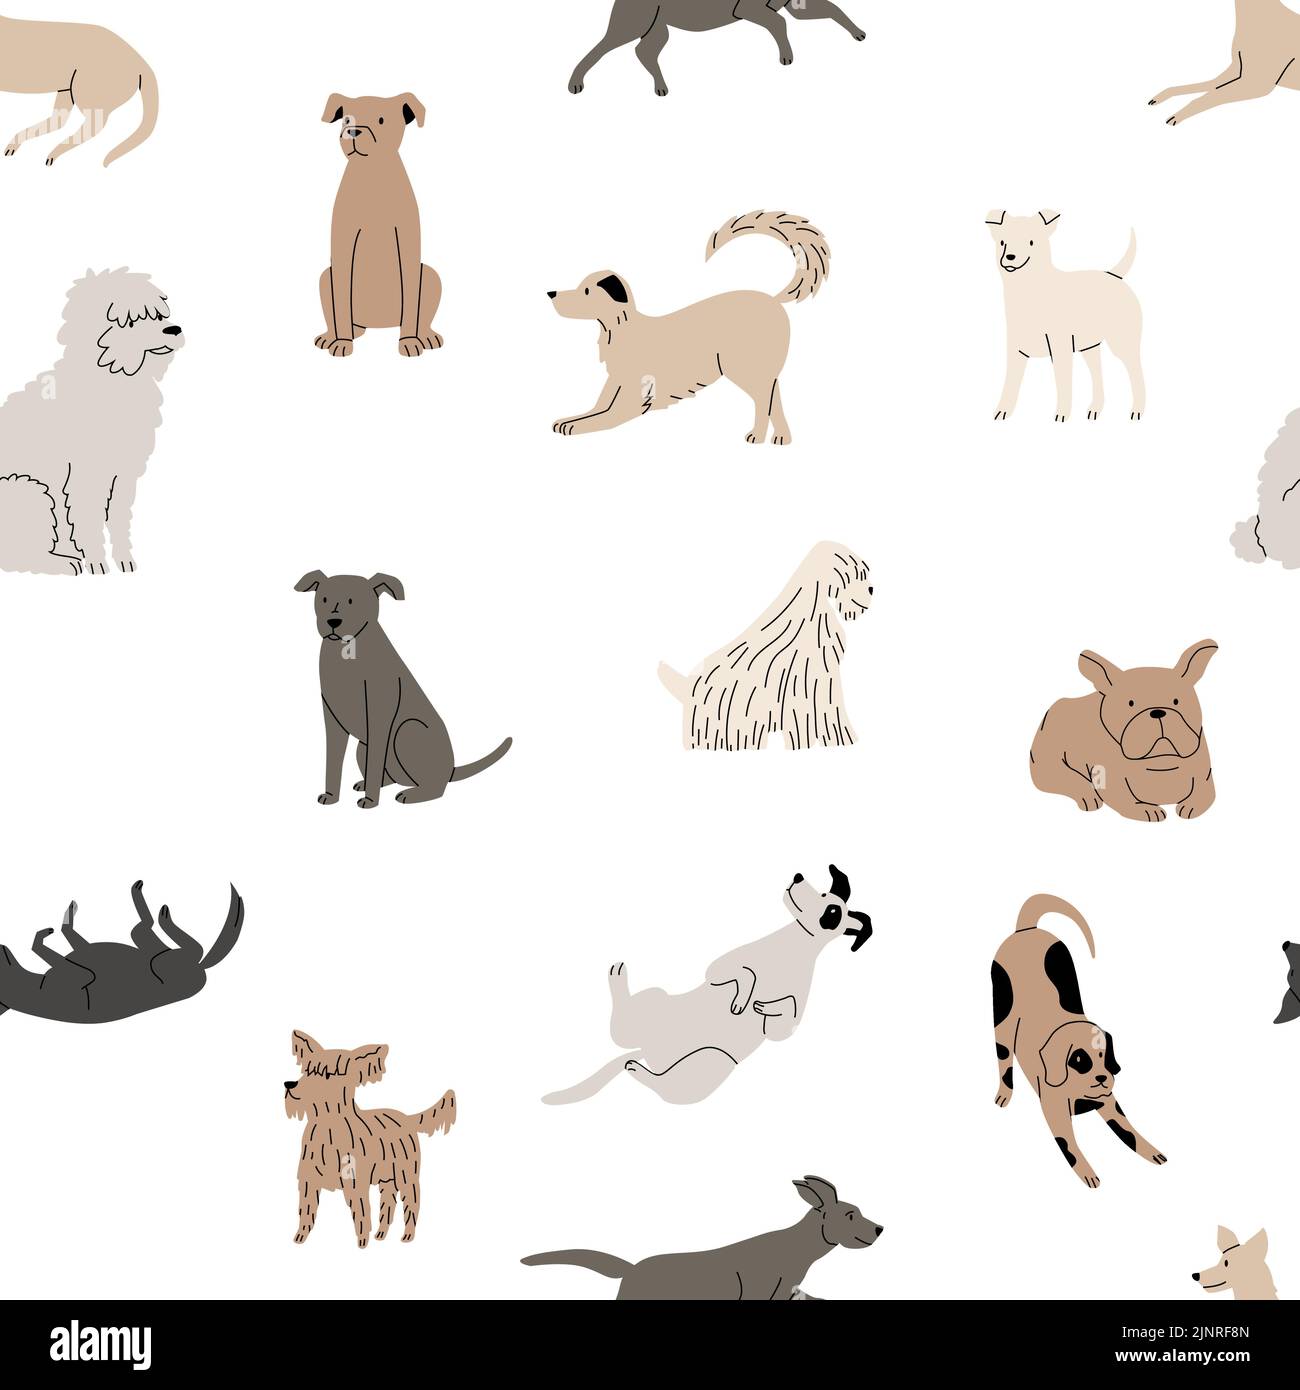 Motif chien doodle. Imprimé sans couture de chiots drôle pour chiens coupés brochure, dessin animé dessin à la main graphique scandinave avec animaux de compagnie. Vecteur Illustration de Vecteur